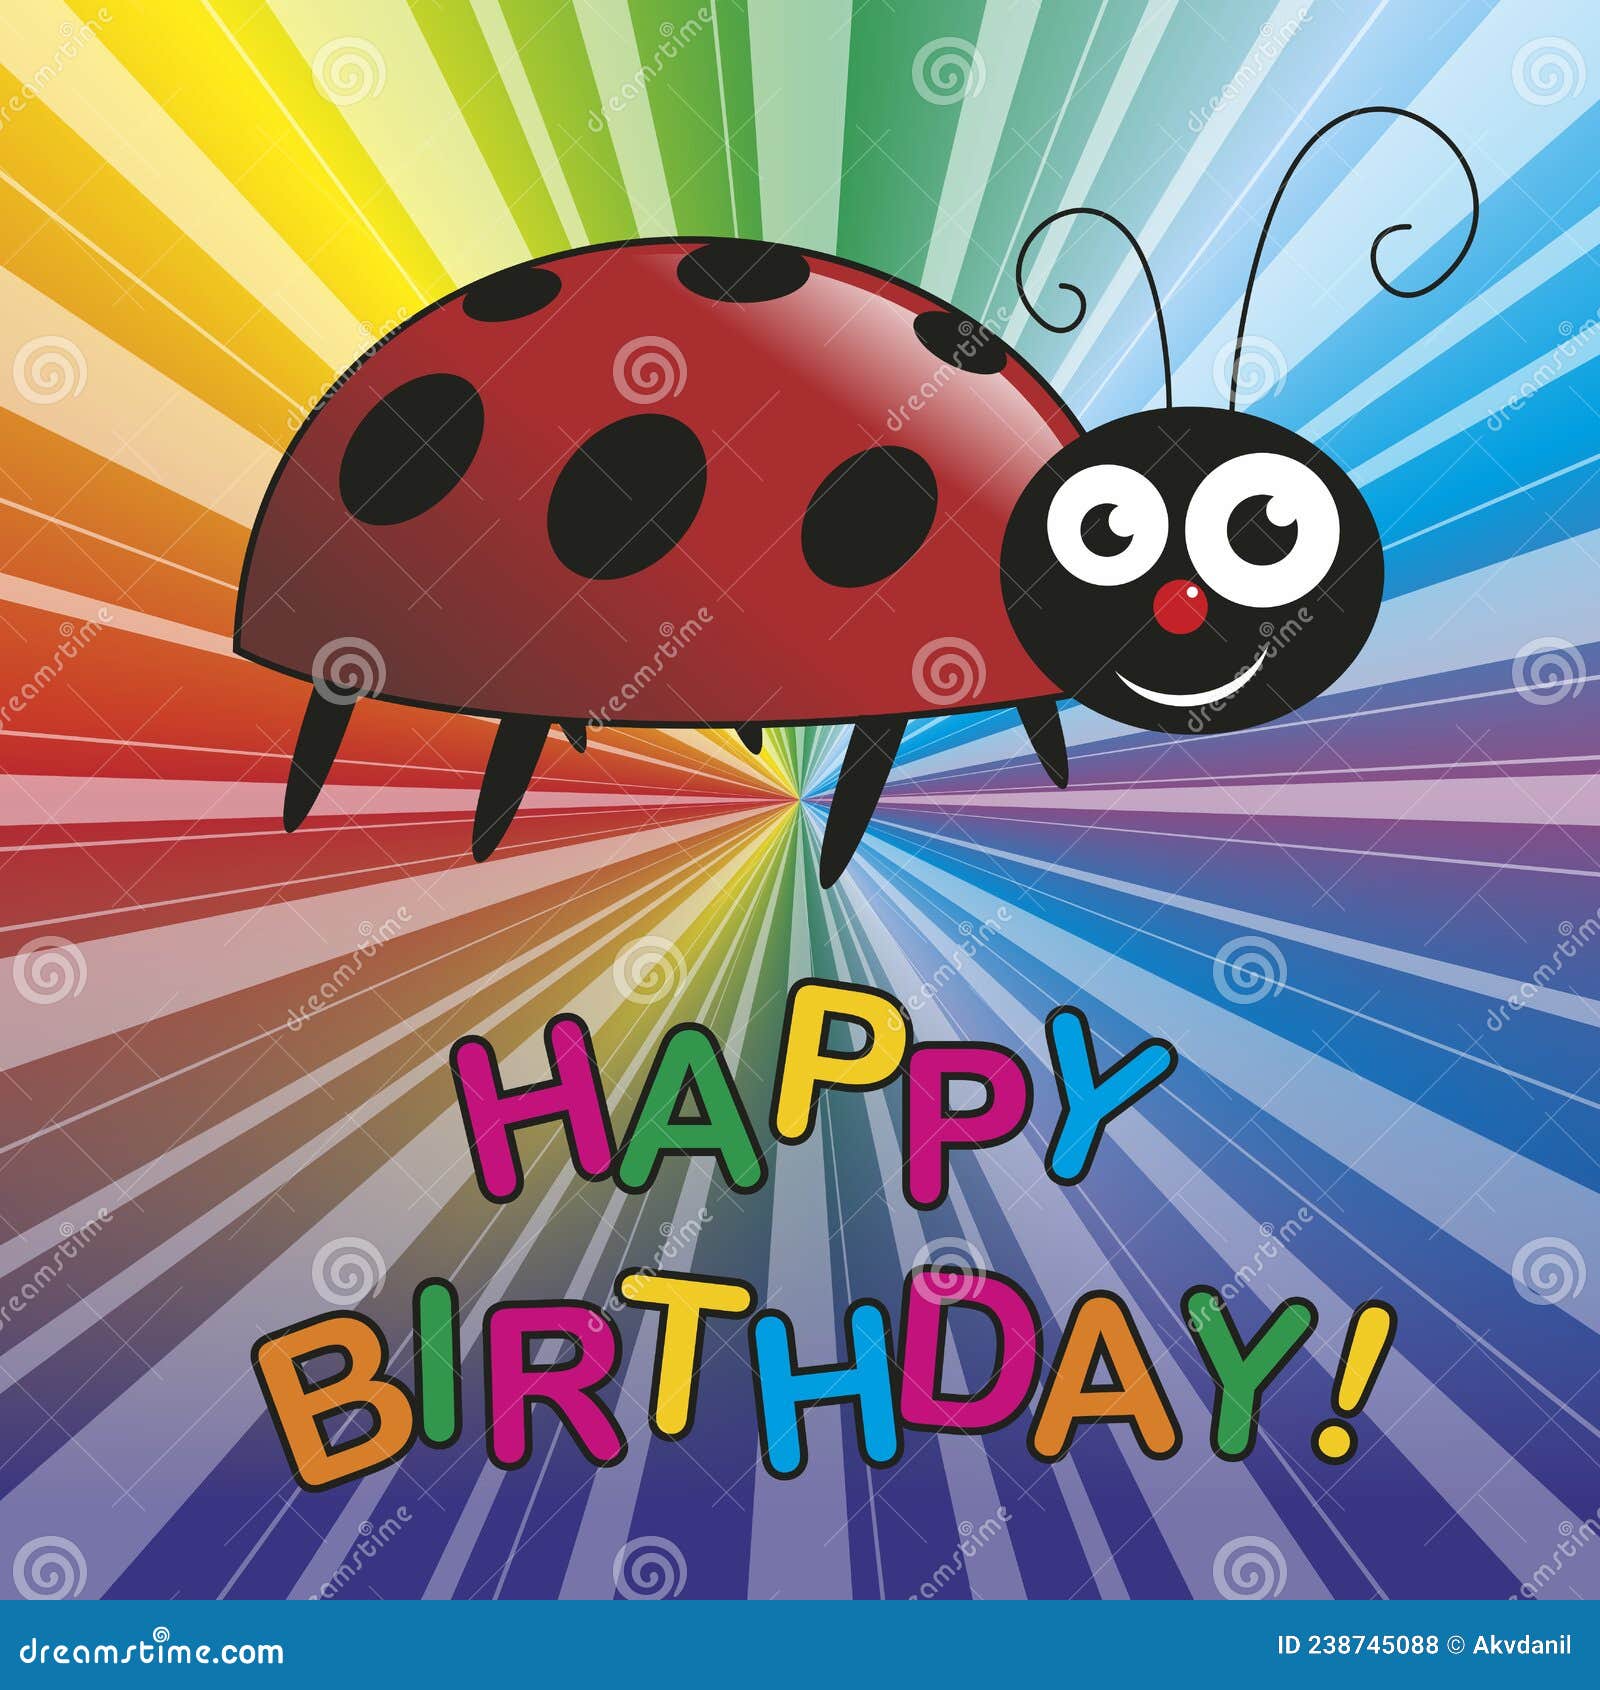 Happy Birthday! stock vector. Illustration of balloon - 238745088